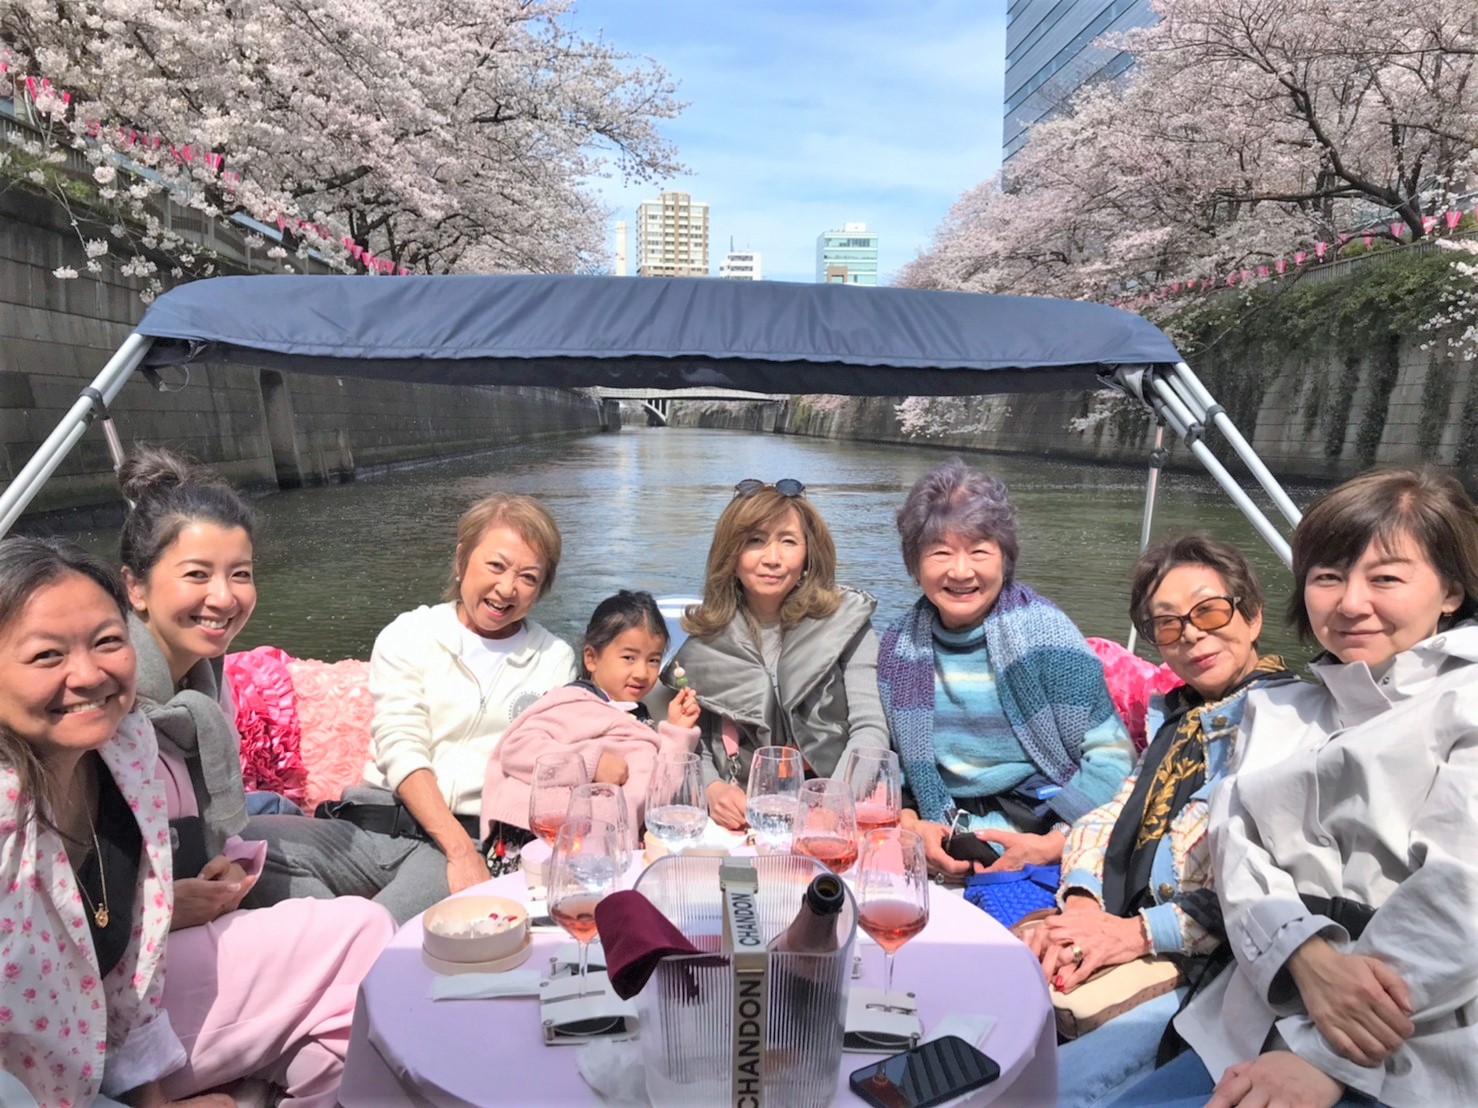 満開の目黒川の桜とともに集合写真を撮影